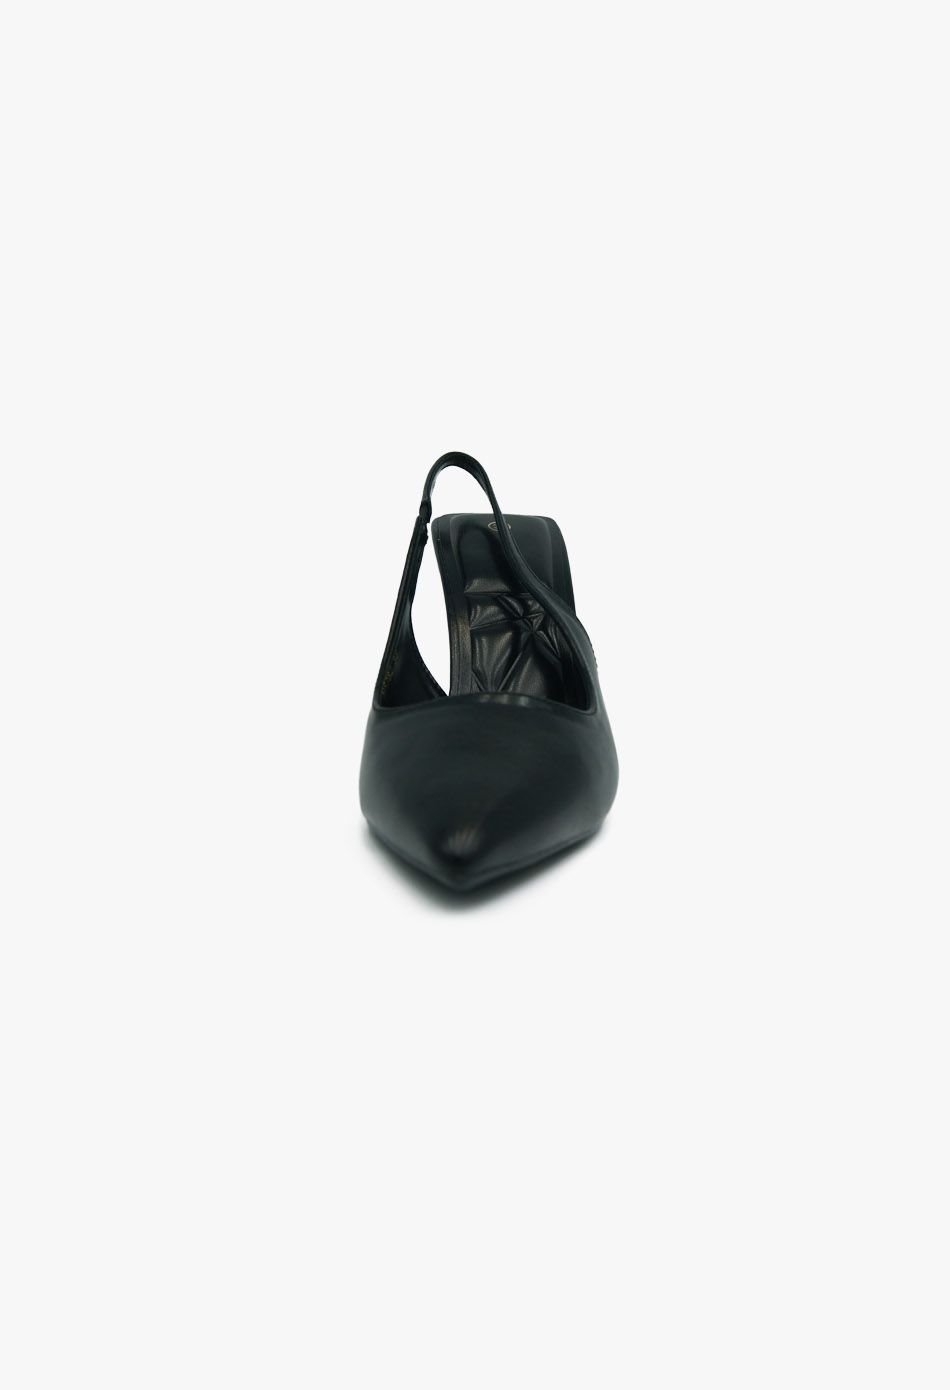 Σατέν Γόβες Μυτερές Open Heel Ψηλό Τακούνι Μαύρο / H5786-black Ανοιχτά Παπούτσια joya.gr